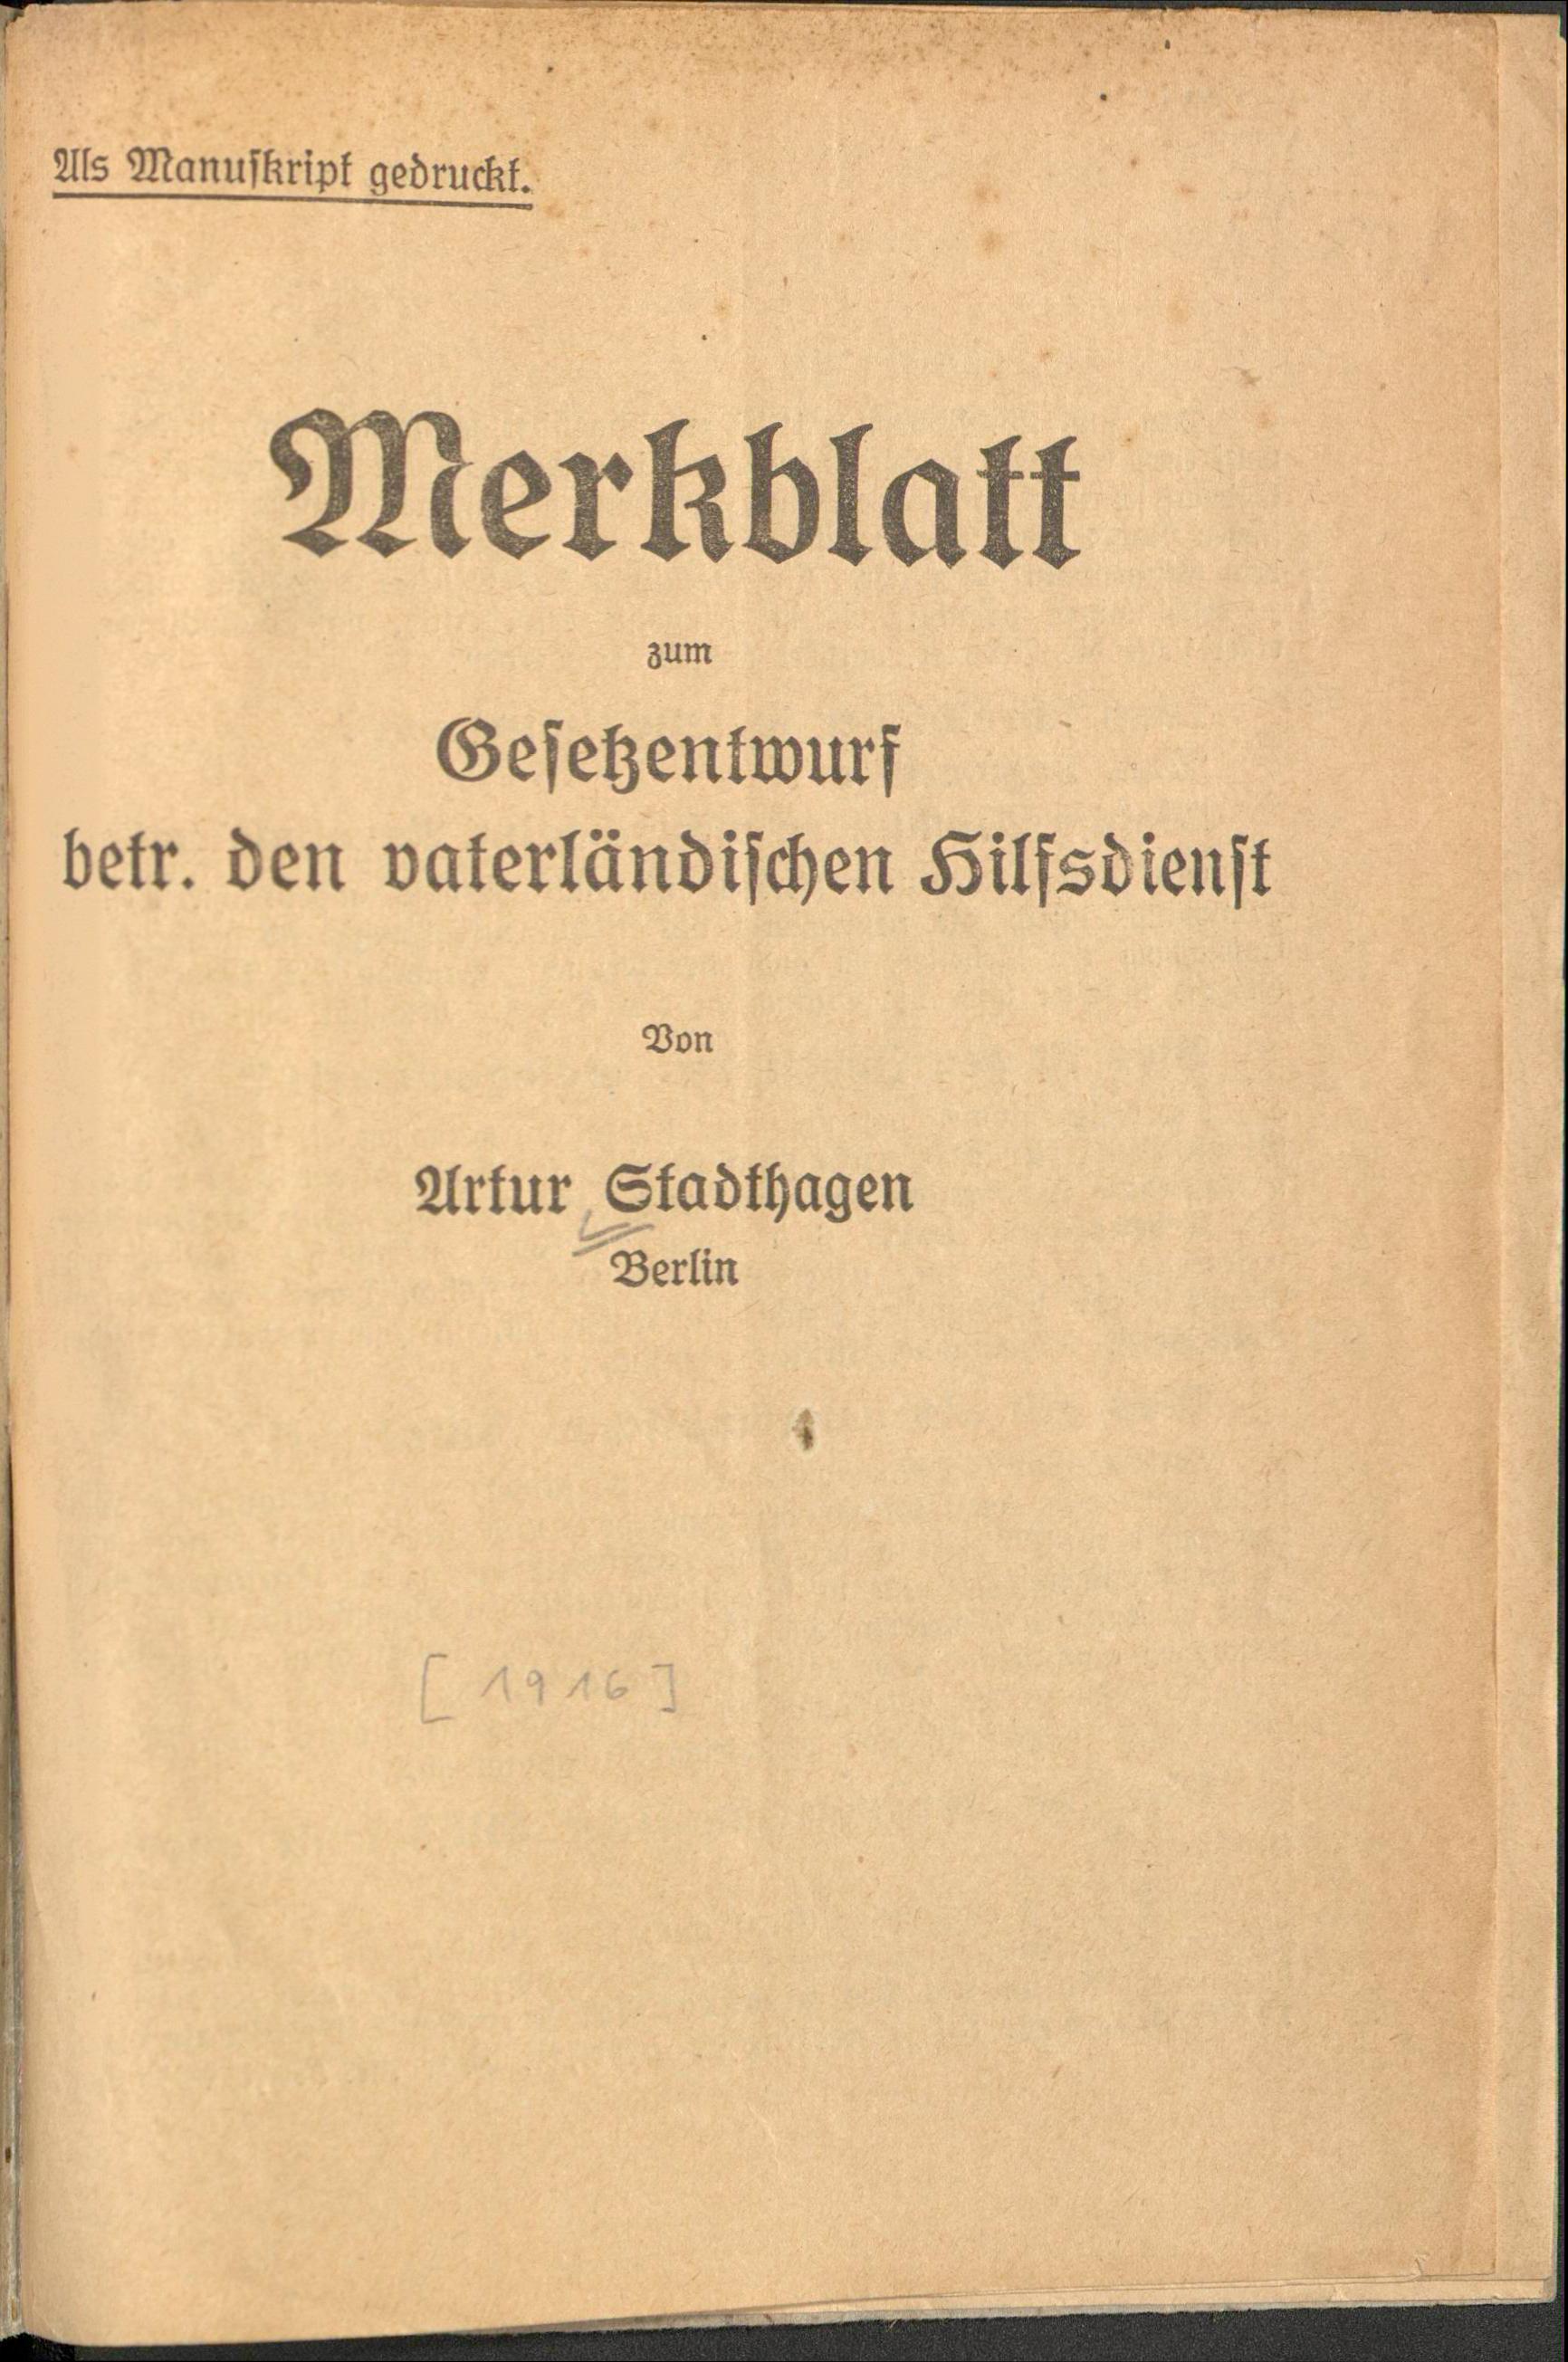 [Merkblatt zum vaterländischen Hilfsdienst, 1916]